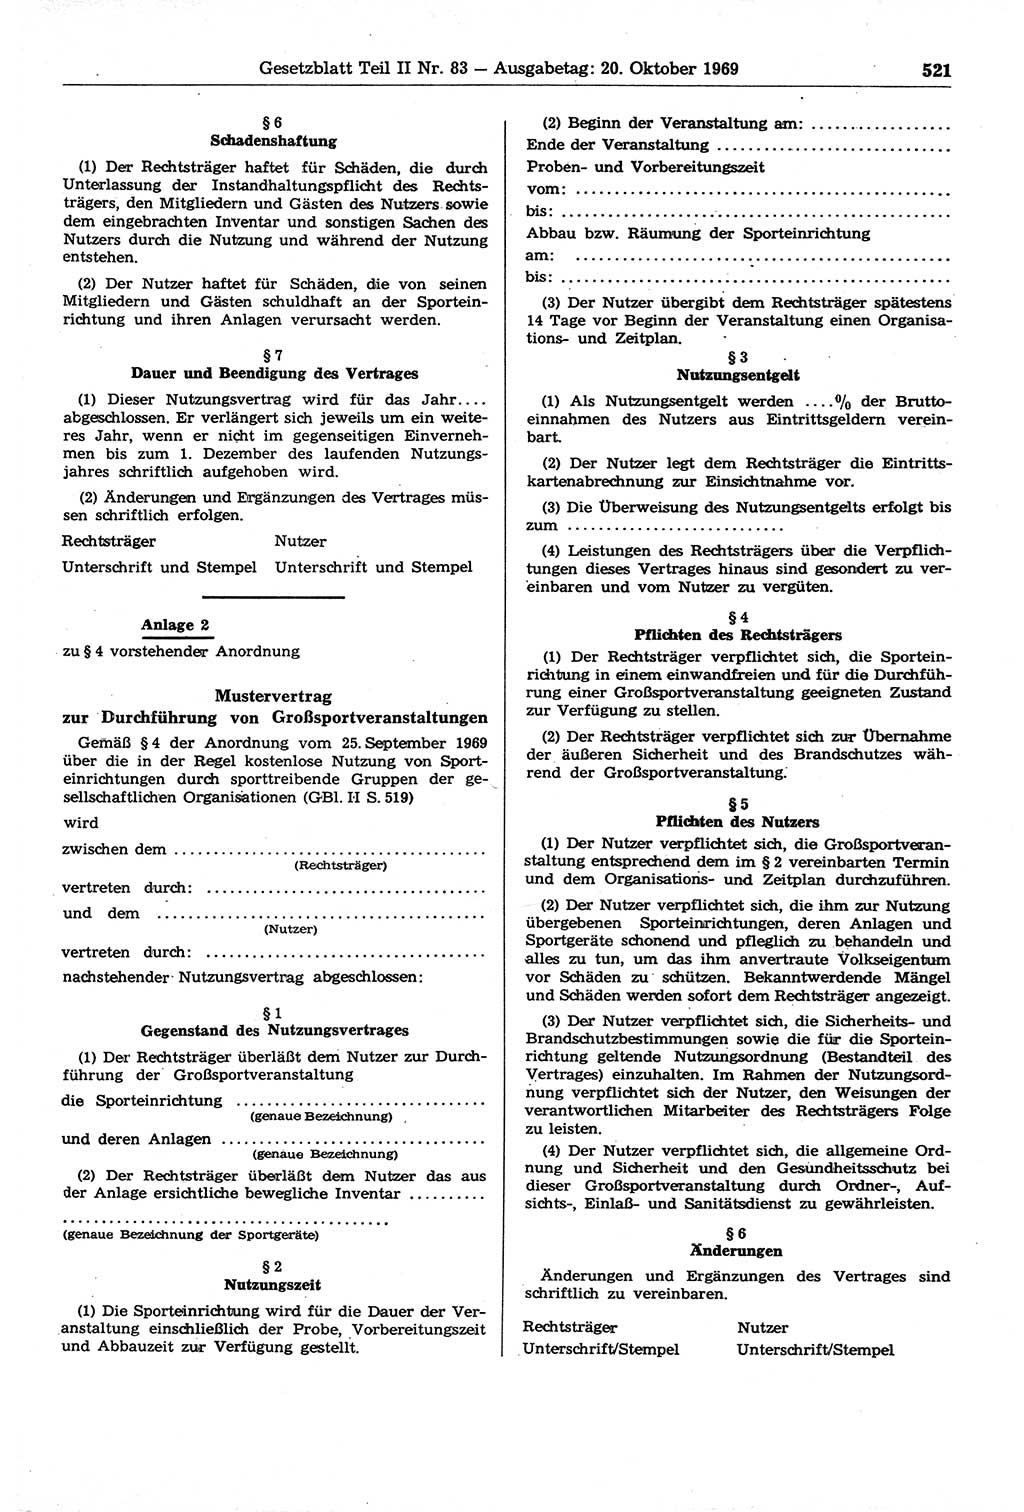 Gesetzblatt (GBl.) der Deutschen Demokratischen Republik (DDR) Teil ⅠⅠ 1969, Seite 521 (GBl. DDR ⅠⅠ 1969, S. 521)